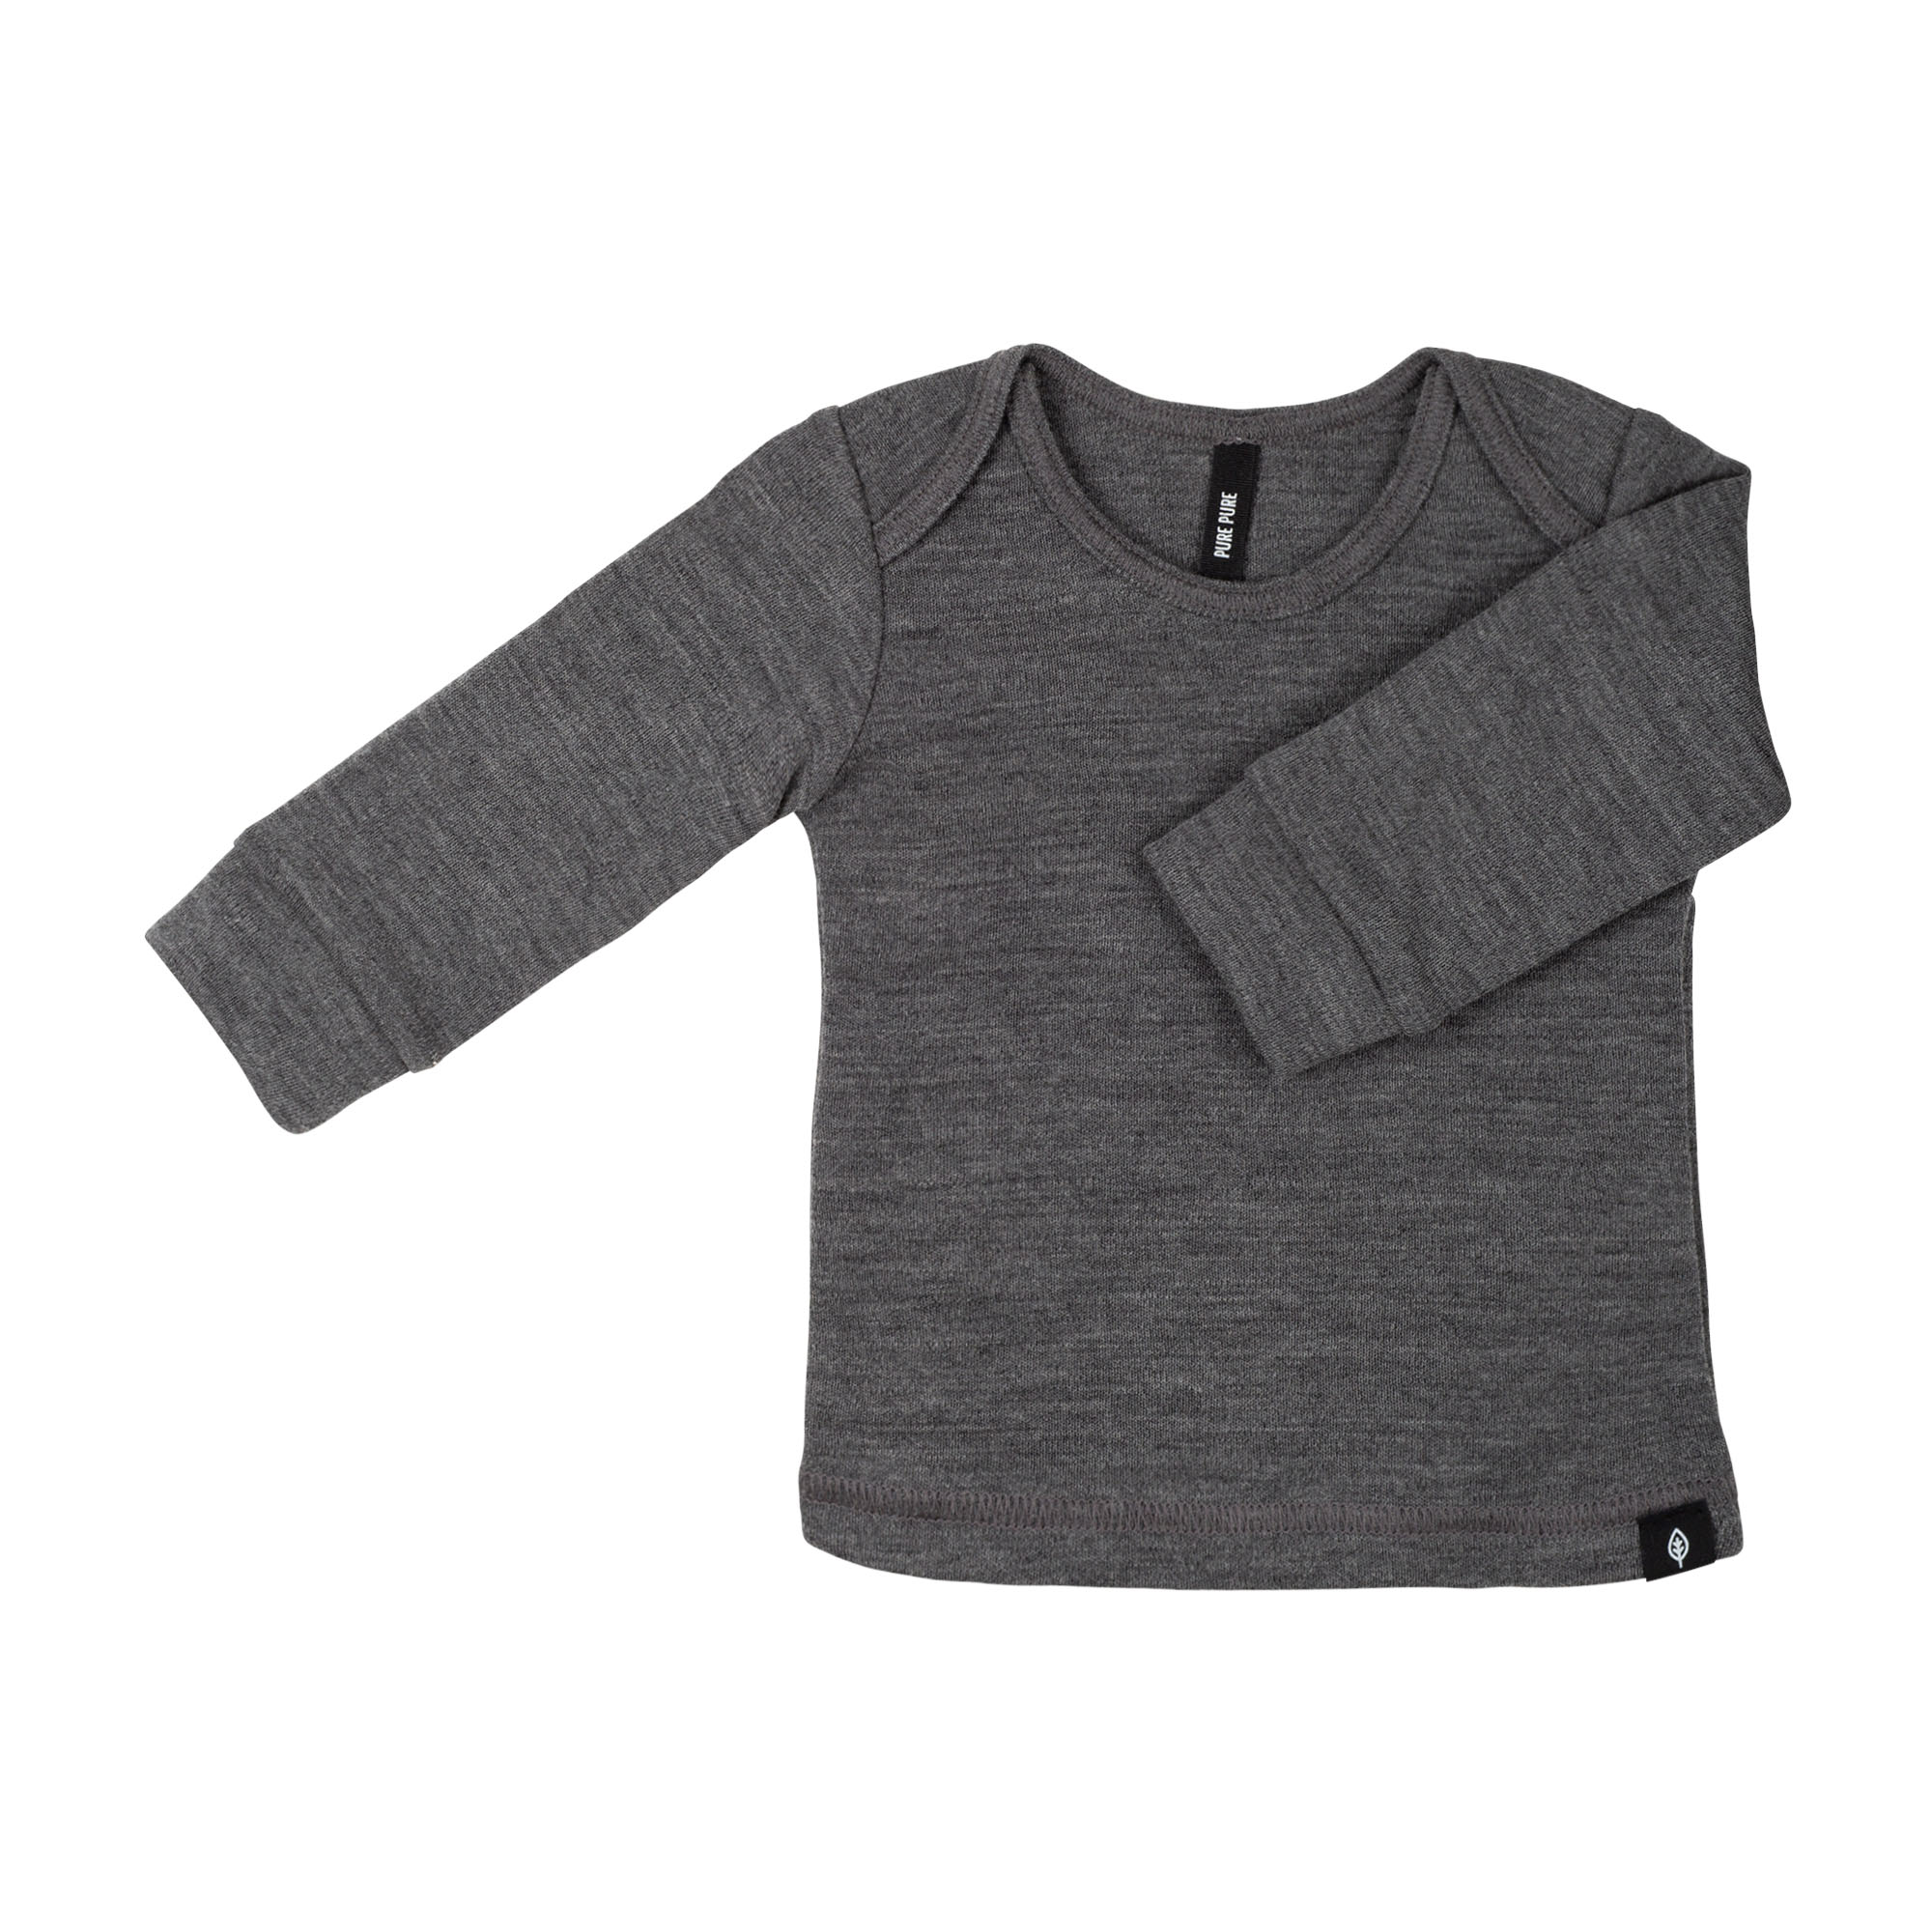 Langarm-Shirt aus hochwertigem Feinstrick | PURE PURE by Bauer